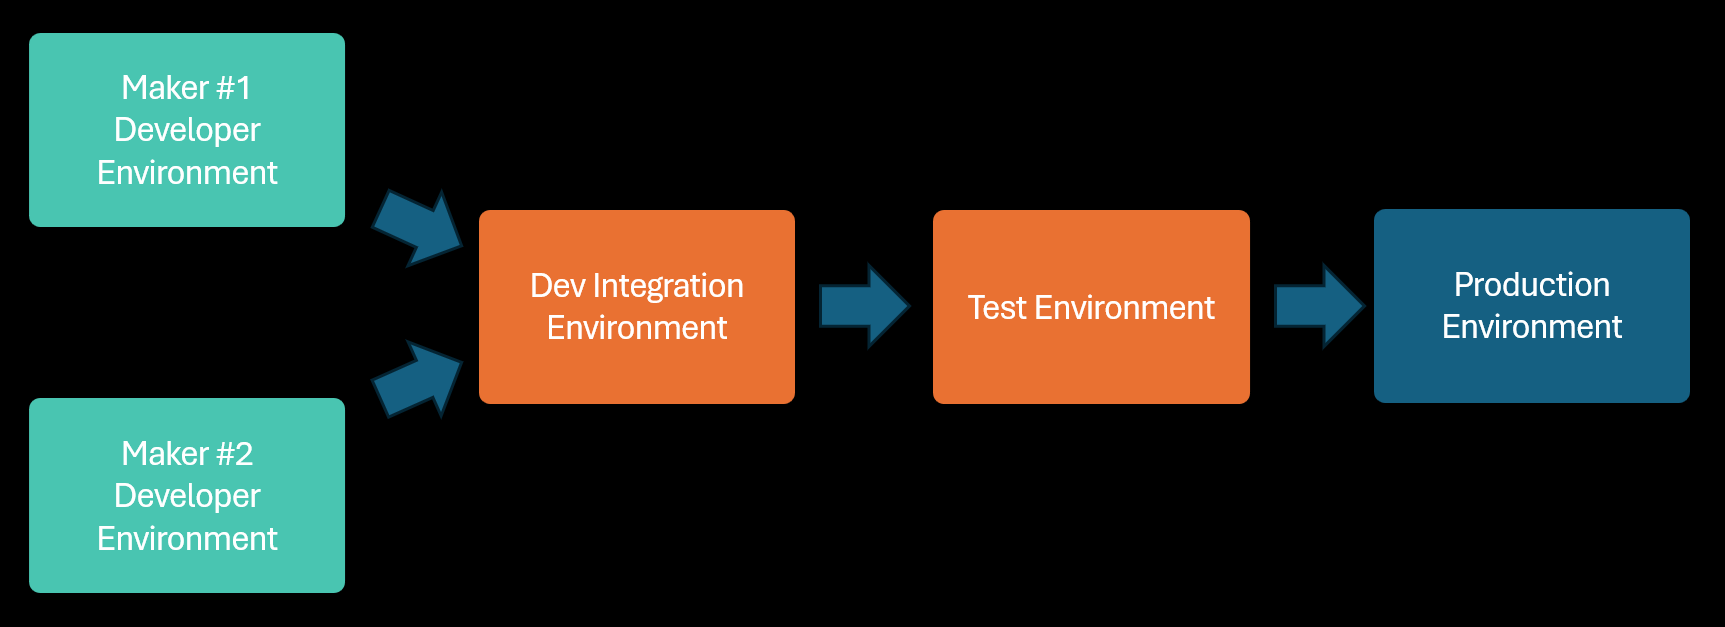 Sơ đồ minh họa một ứng dụng doanh nghiệp đang được phát triển trong các môi trường riêng lẻ được kết hợp trong môi trường tích hợp dùng chung, sau đó được thử nghiệm và triển khai trong các môi trường được chia sẻ với các ứng dụng khác